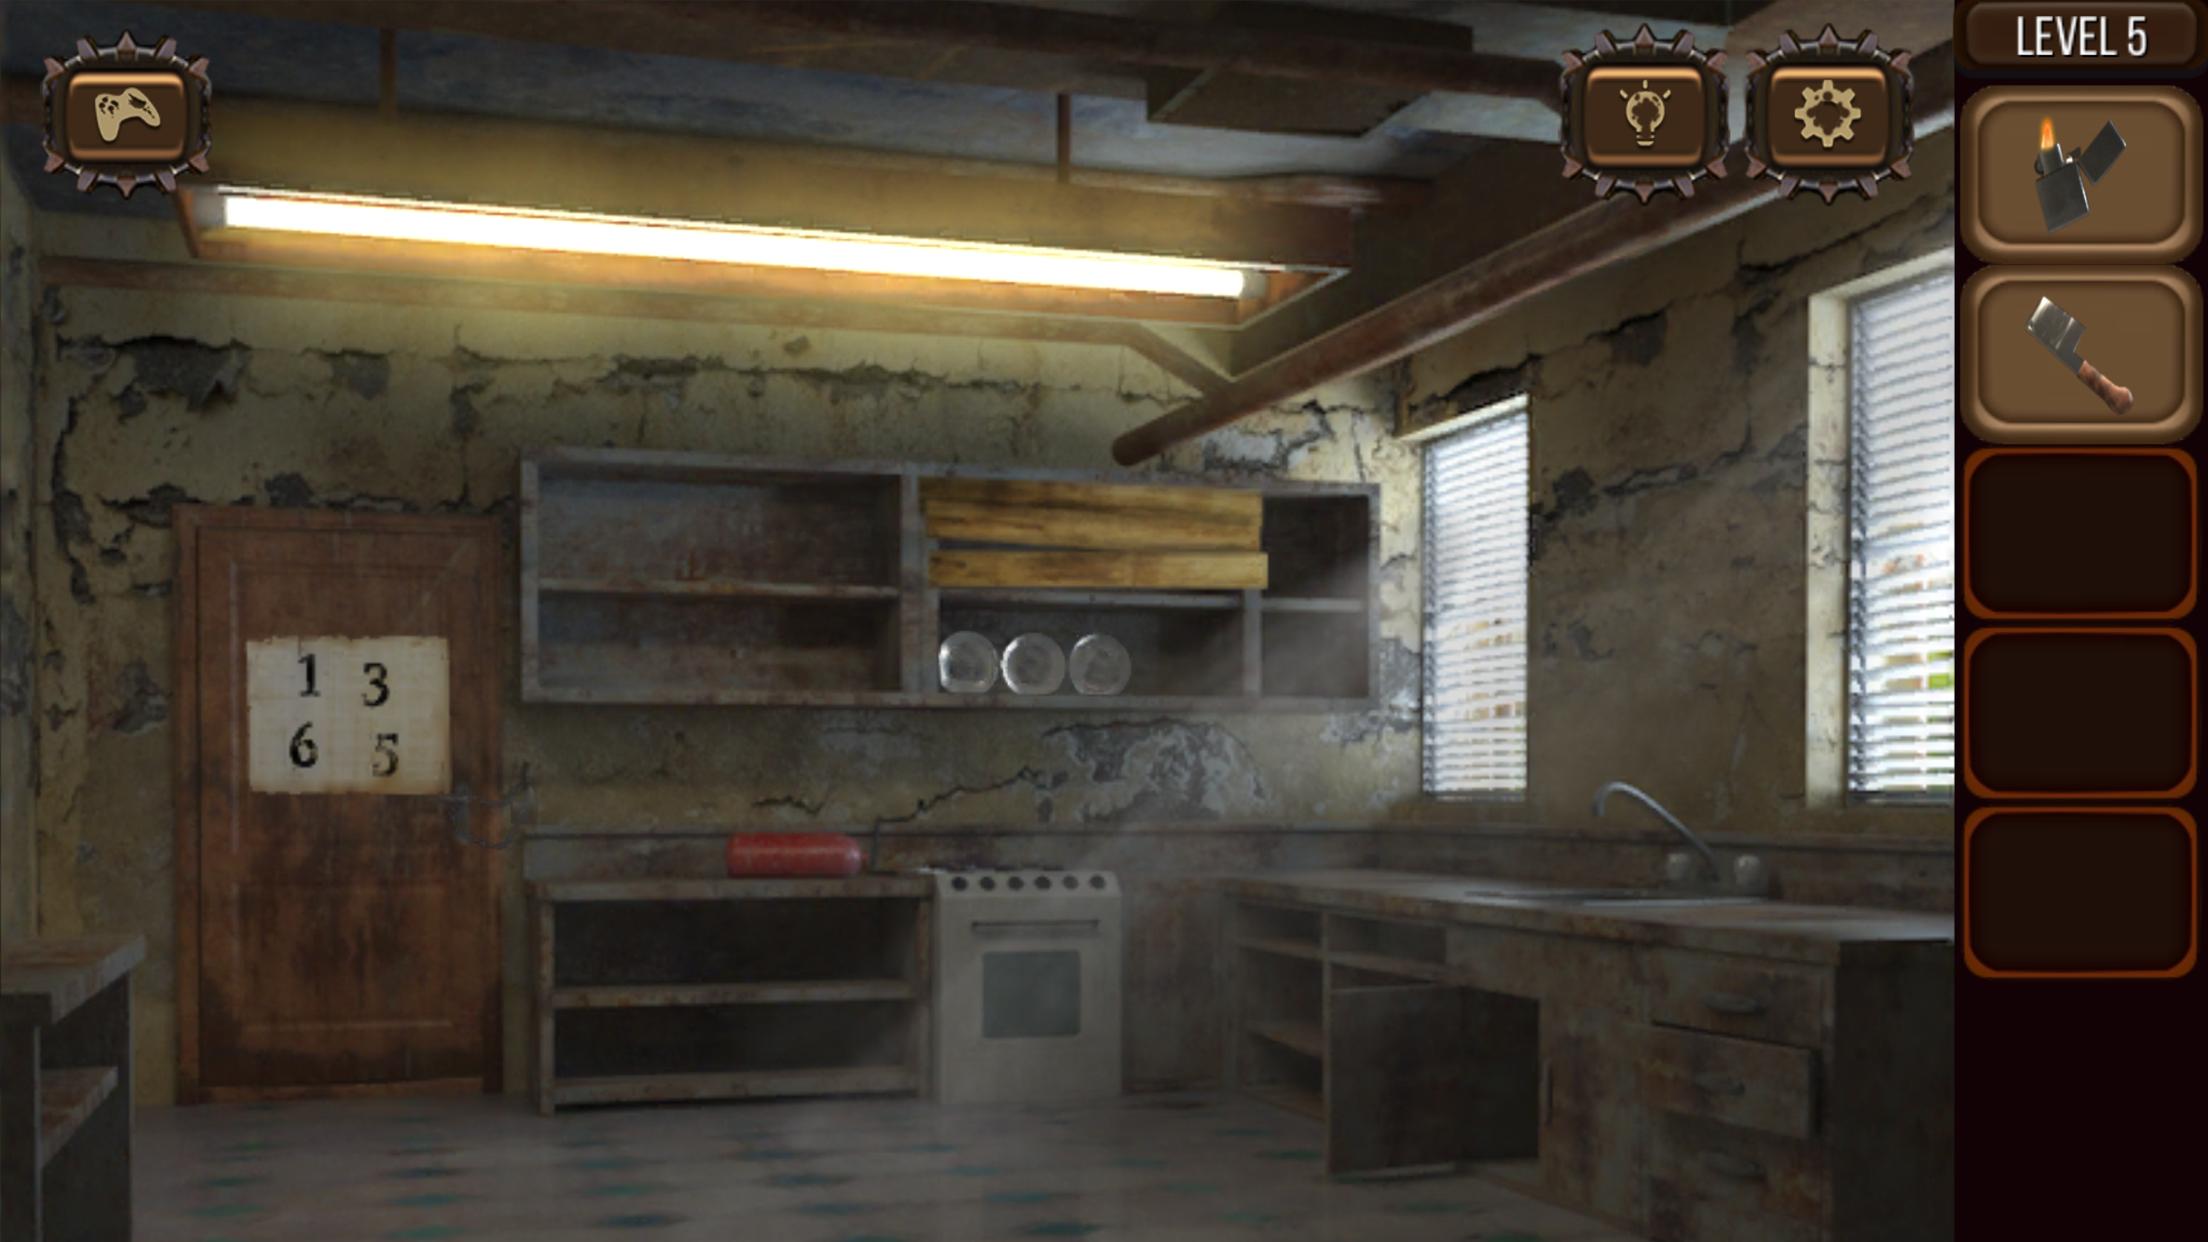 Doomsday игра улучшение штаб квартиры до 5 уровня. Escape story прохождение